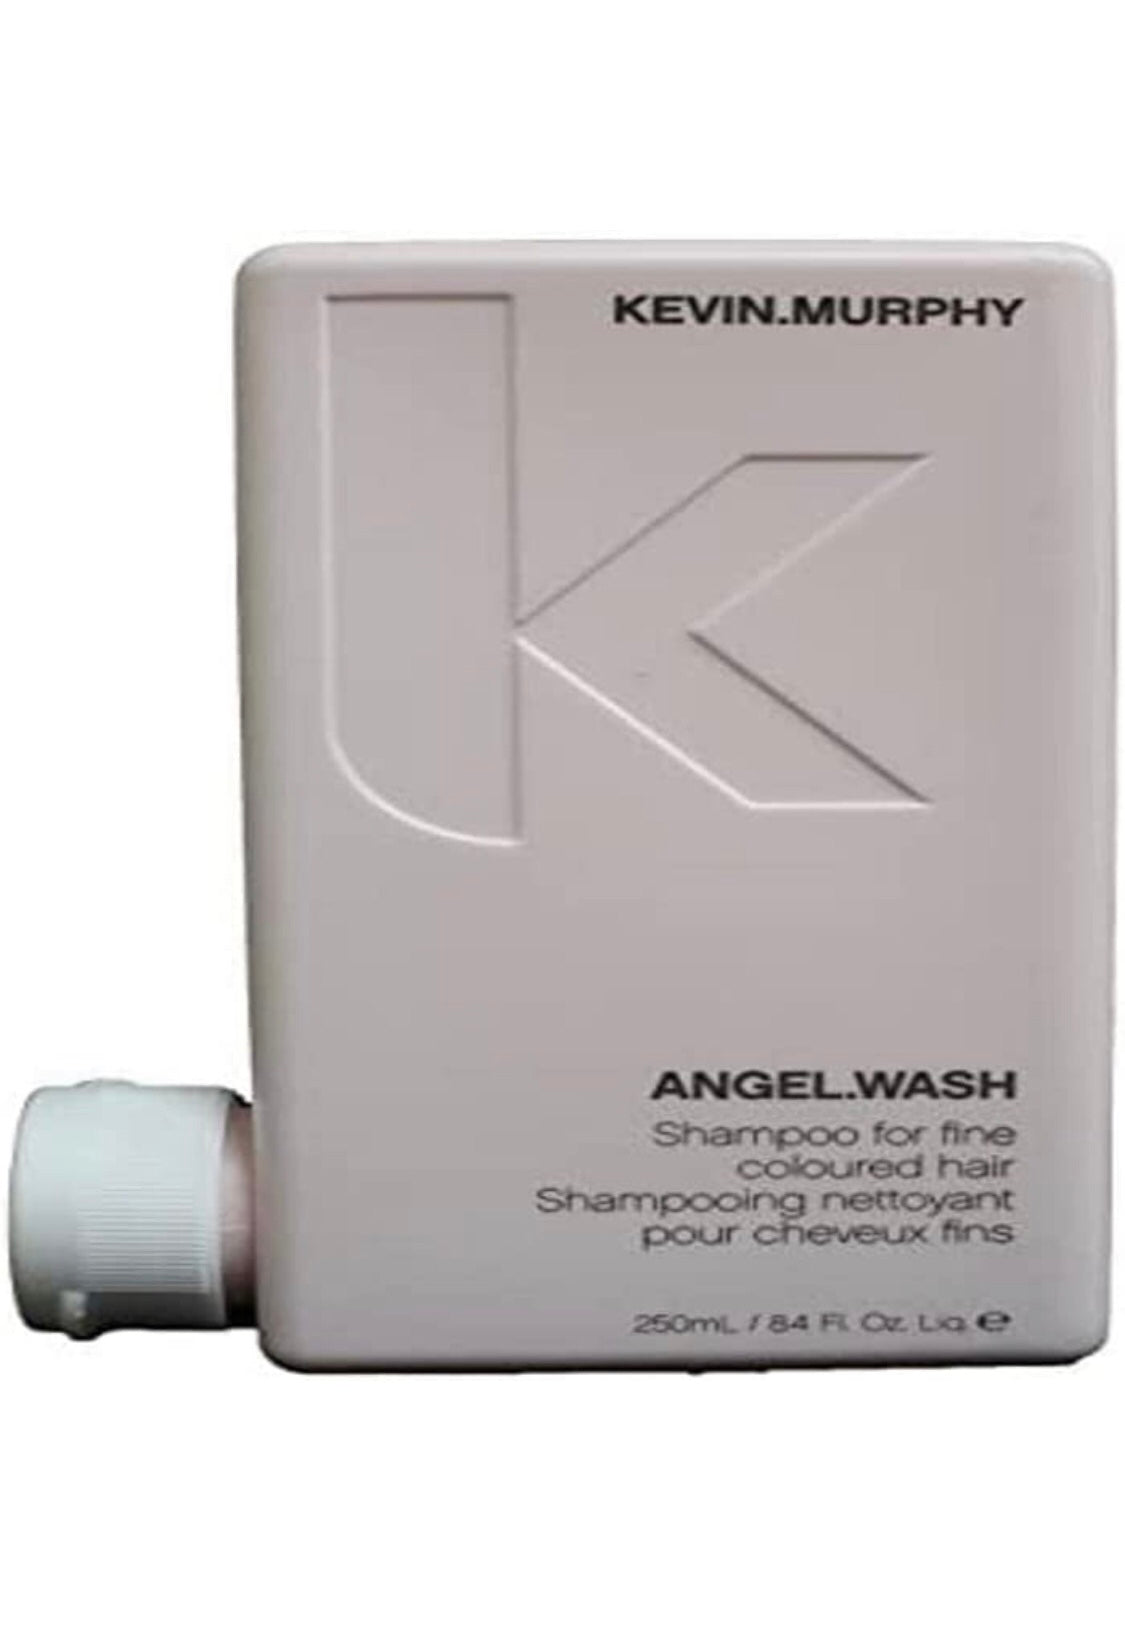 Kevin.Murphy - Angel.Wash Shampoo 8.4 fl. oz. / 250 ml